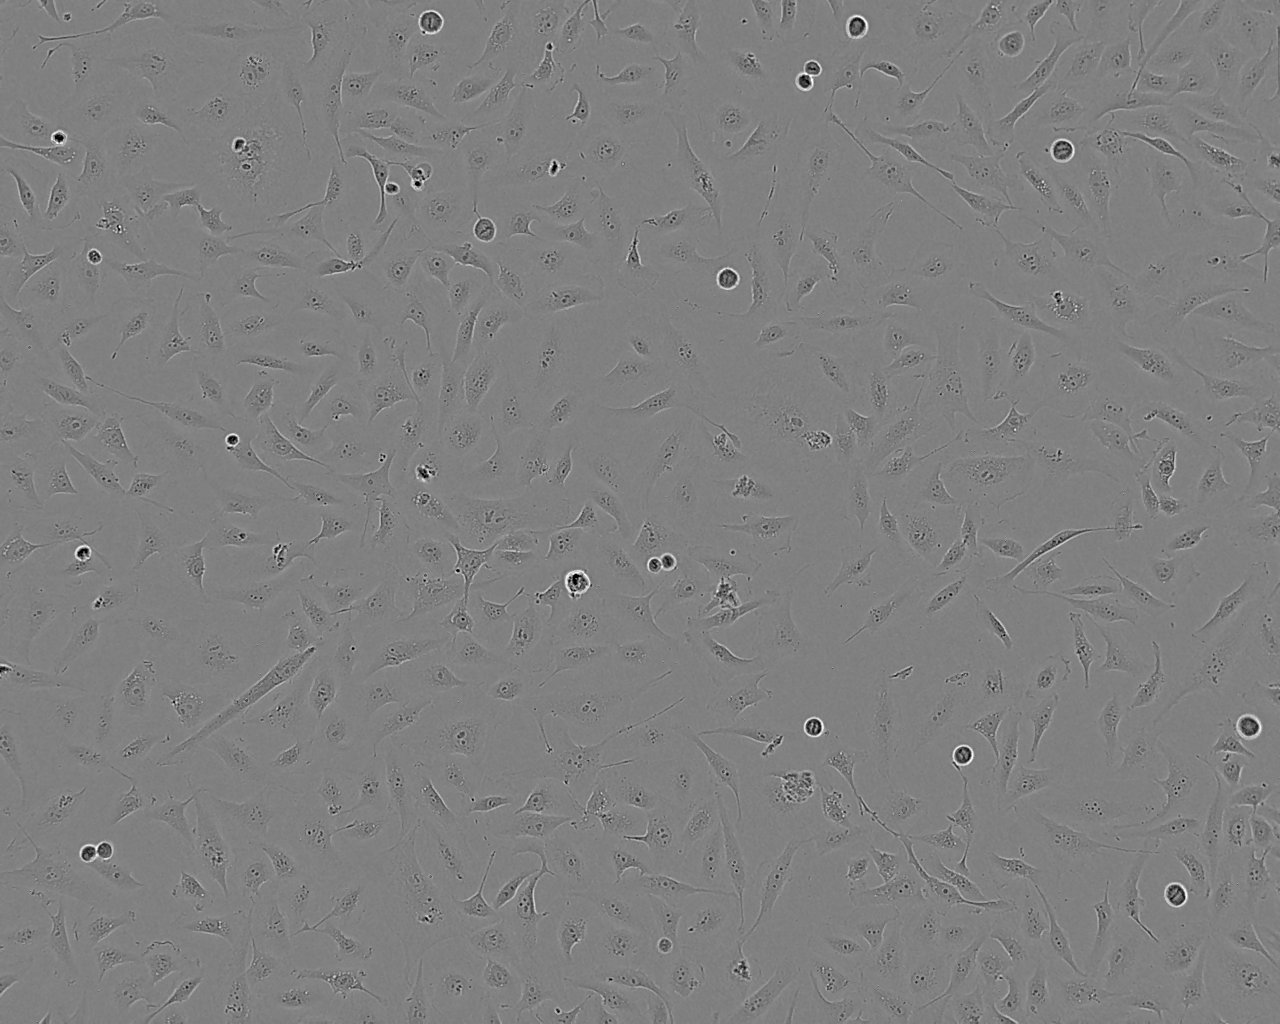 Ca9-22 epithelioid cells人口腔上皮癌细胞系,Ca9-22 epithelioid cells